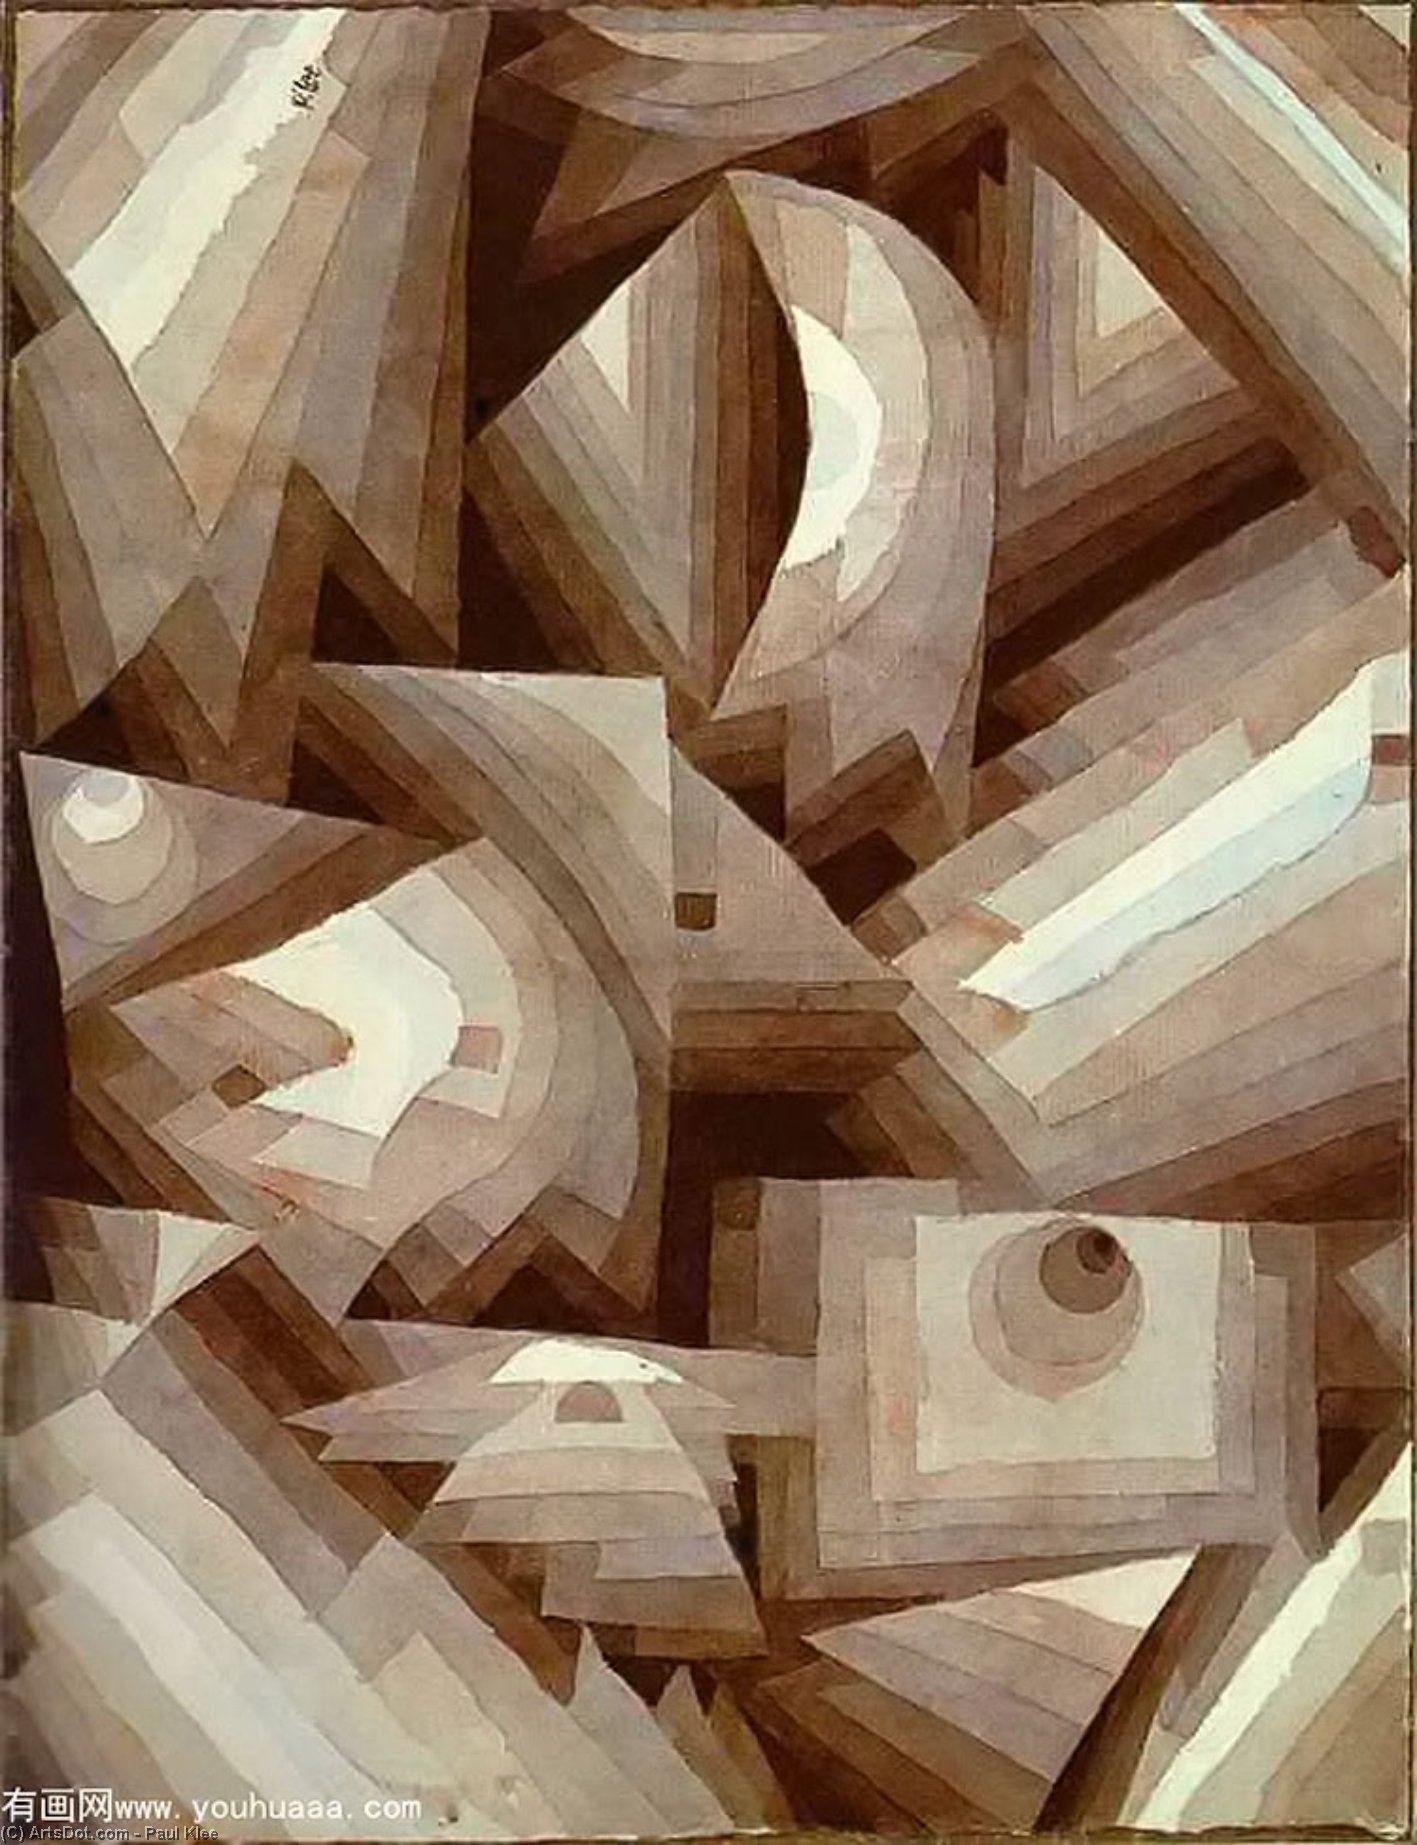 Wikoo.org - موسوعة الفنون الجميلة - اللوحة، العمل الفني Paul Klee - Crystal